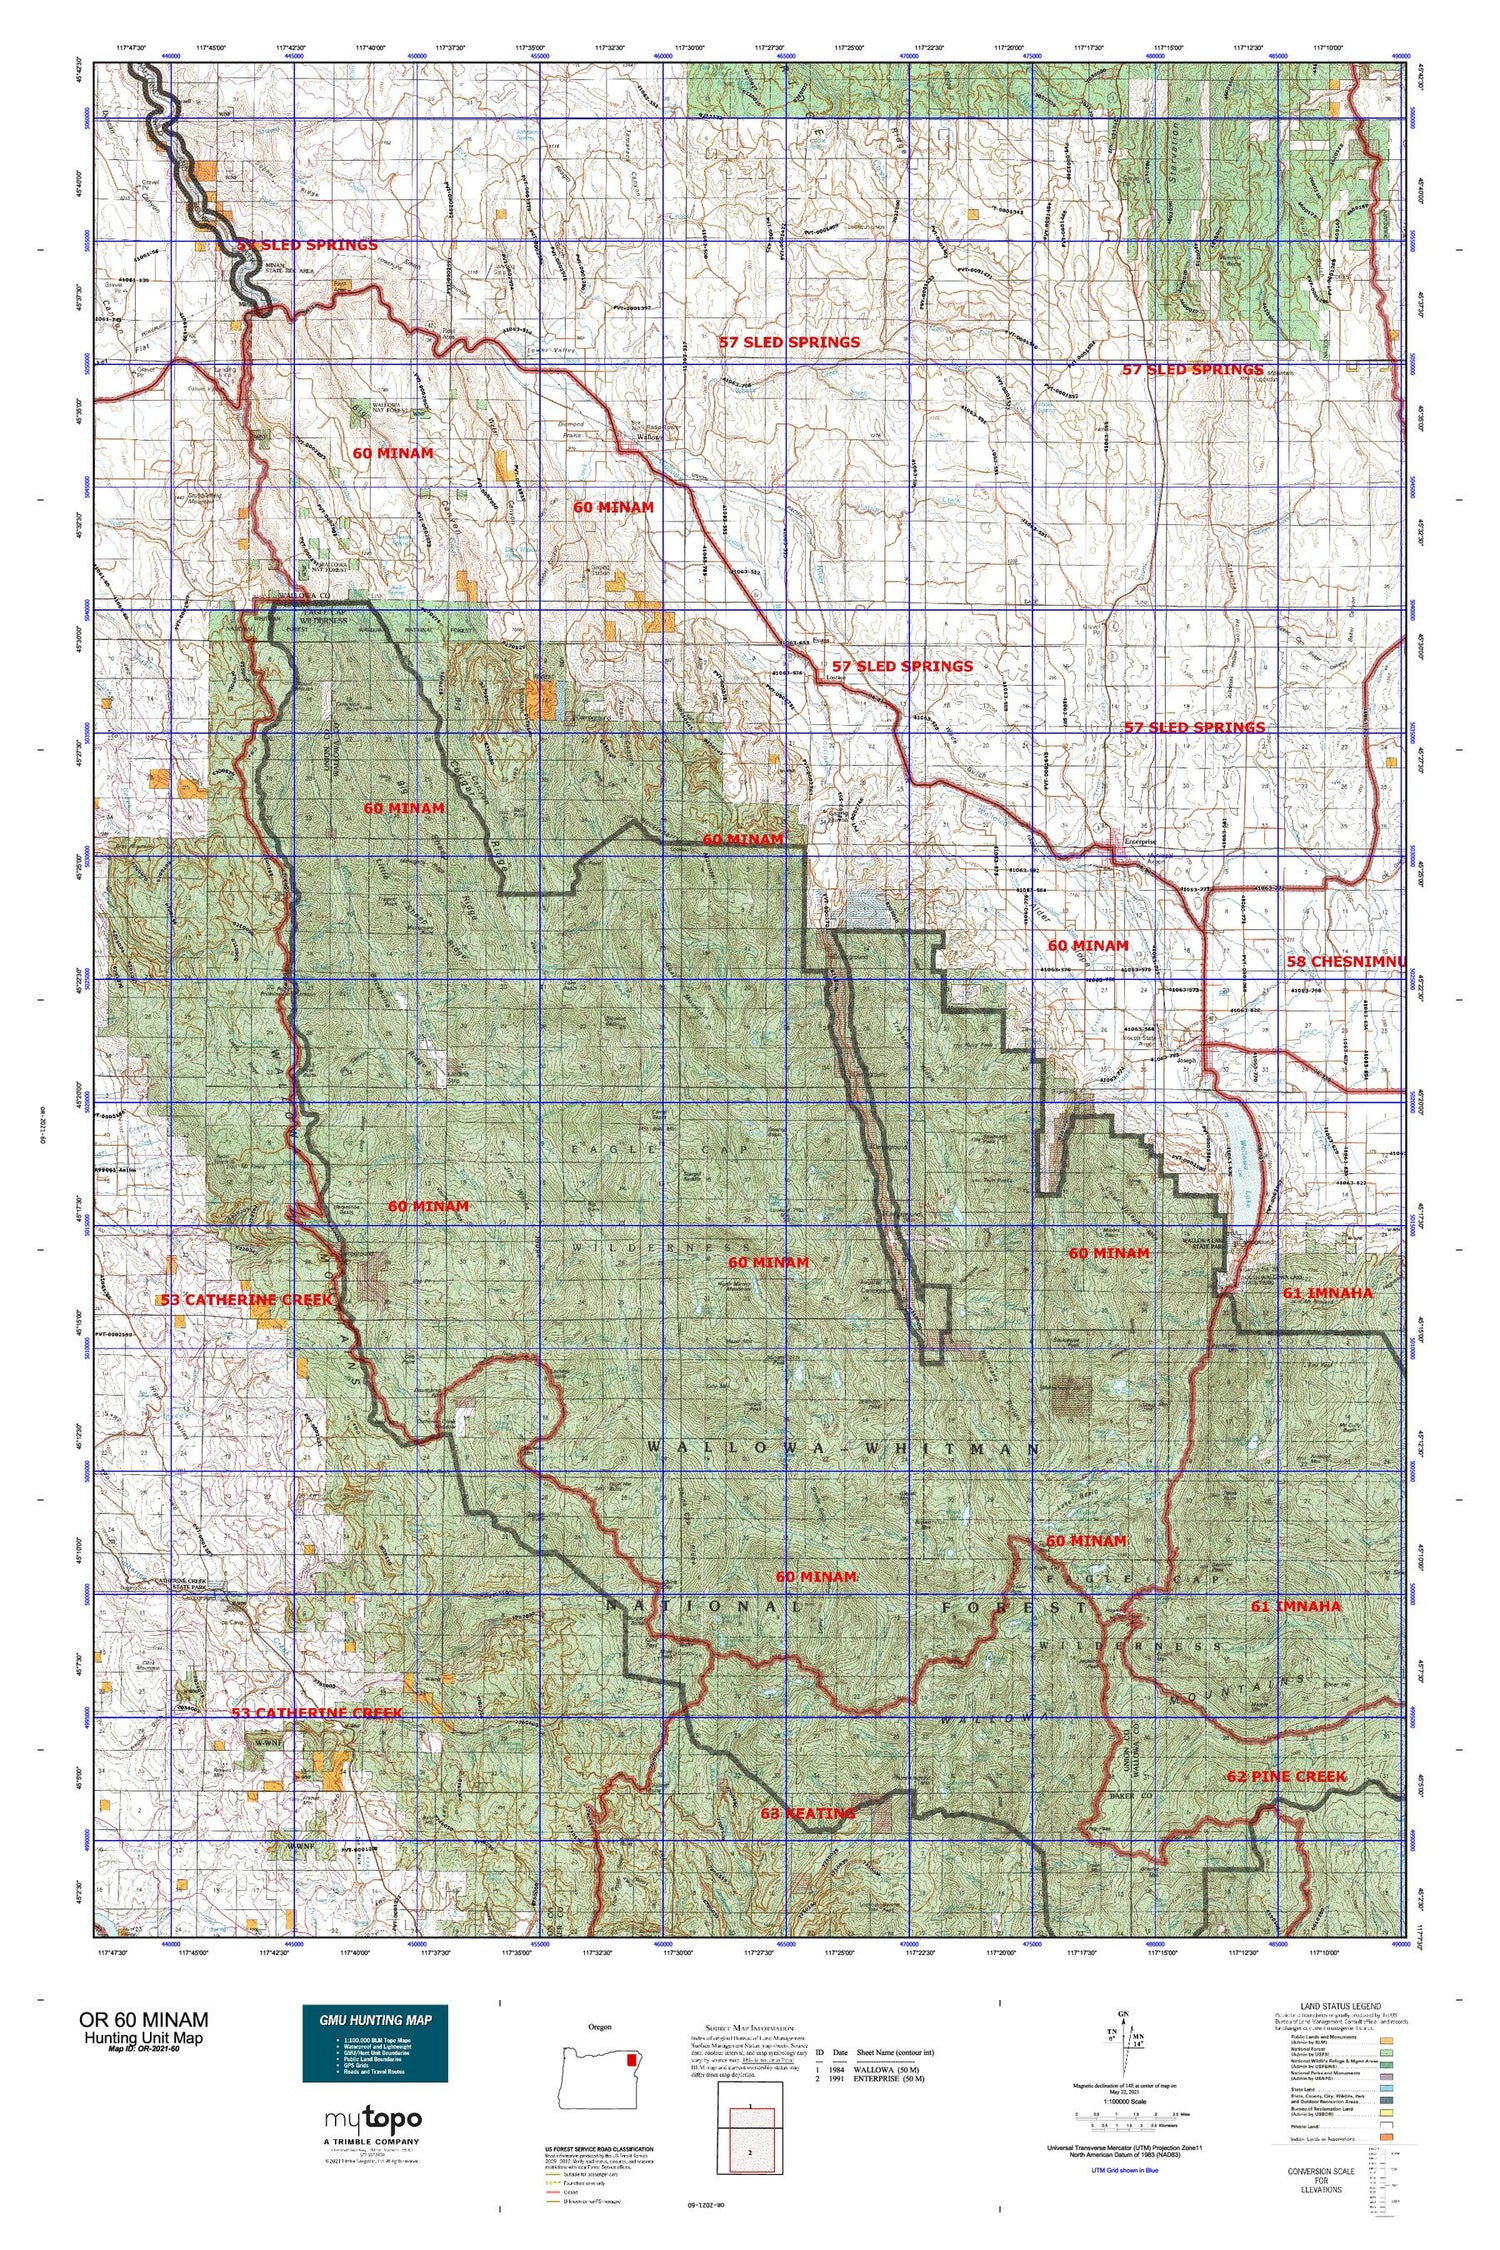 Oregon 60 Minam Map Image